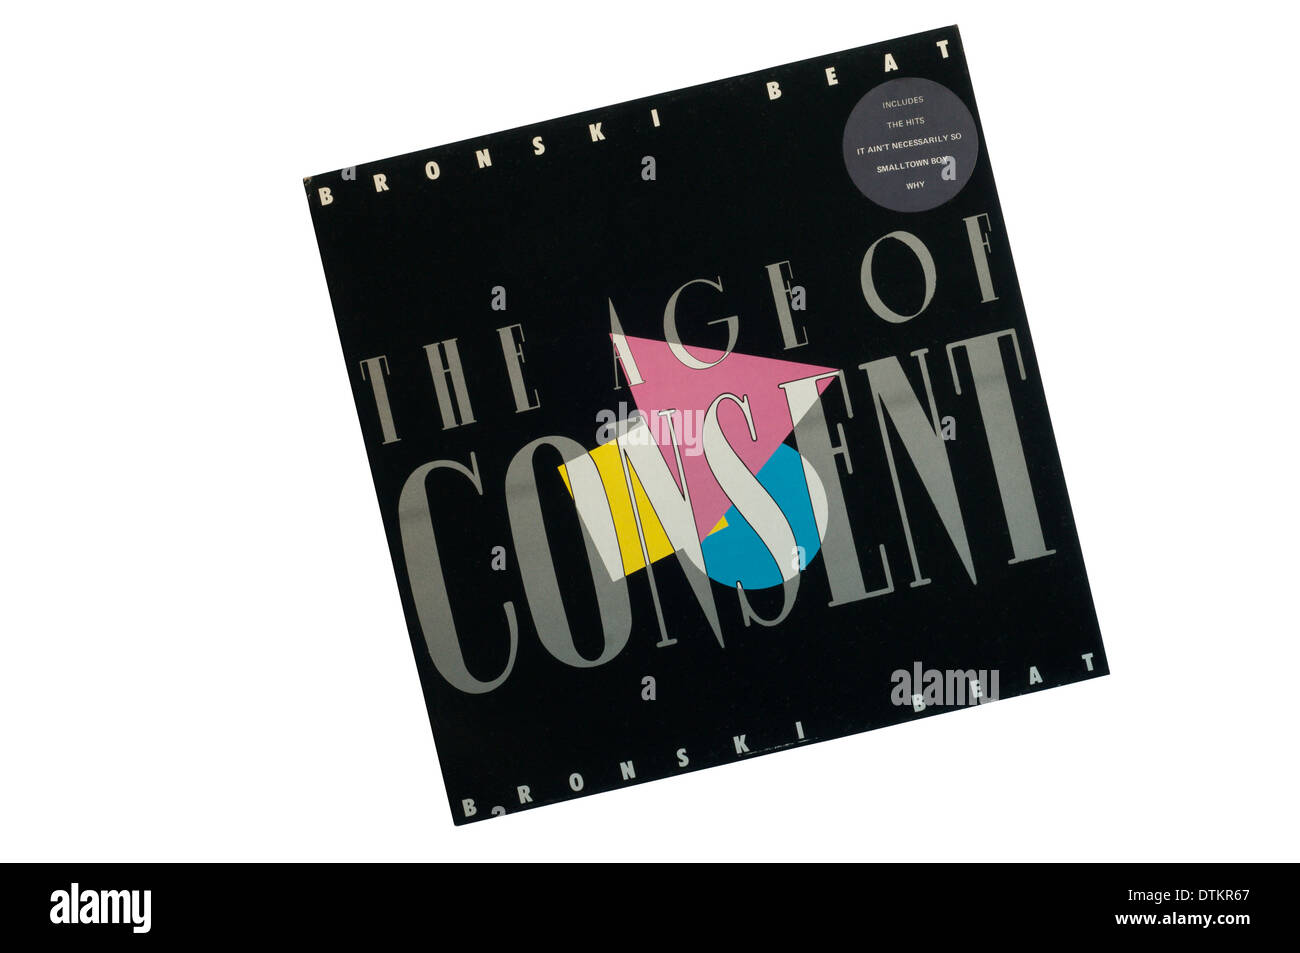 La edad de consentimiento es el álbum debut de la banda de synthpop Bronski Beat. Fue lanzado en 1984. Foto de stock